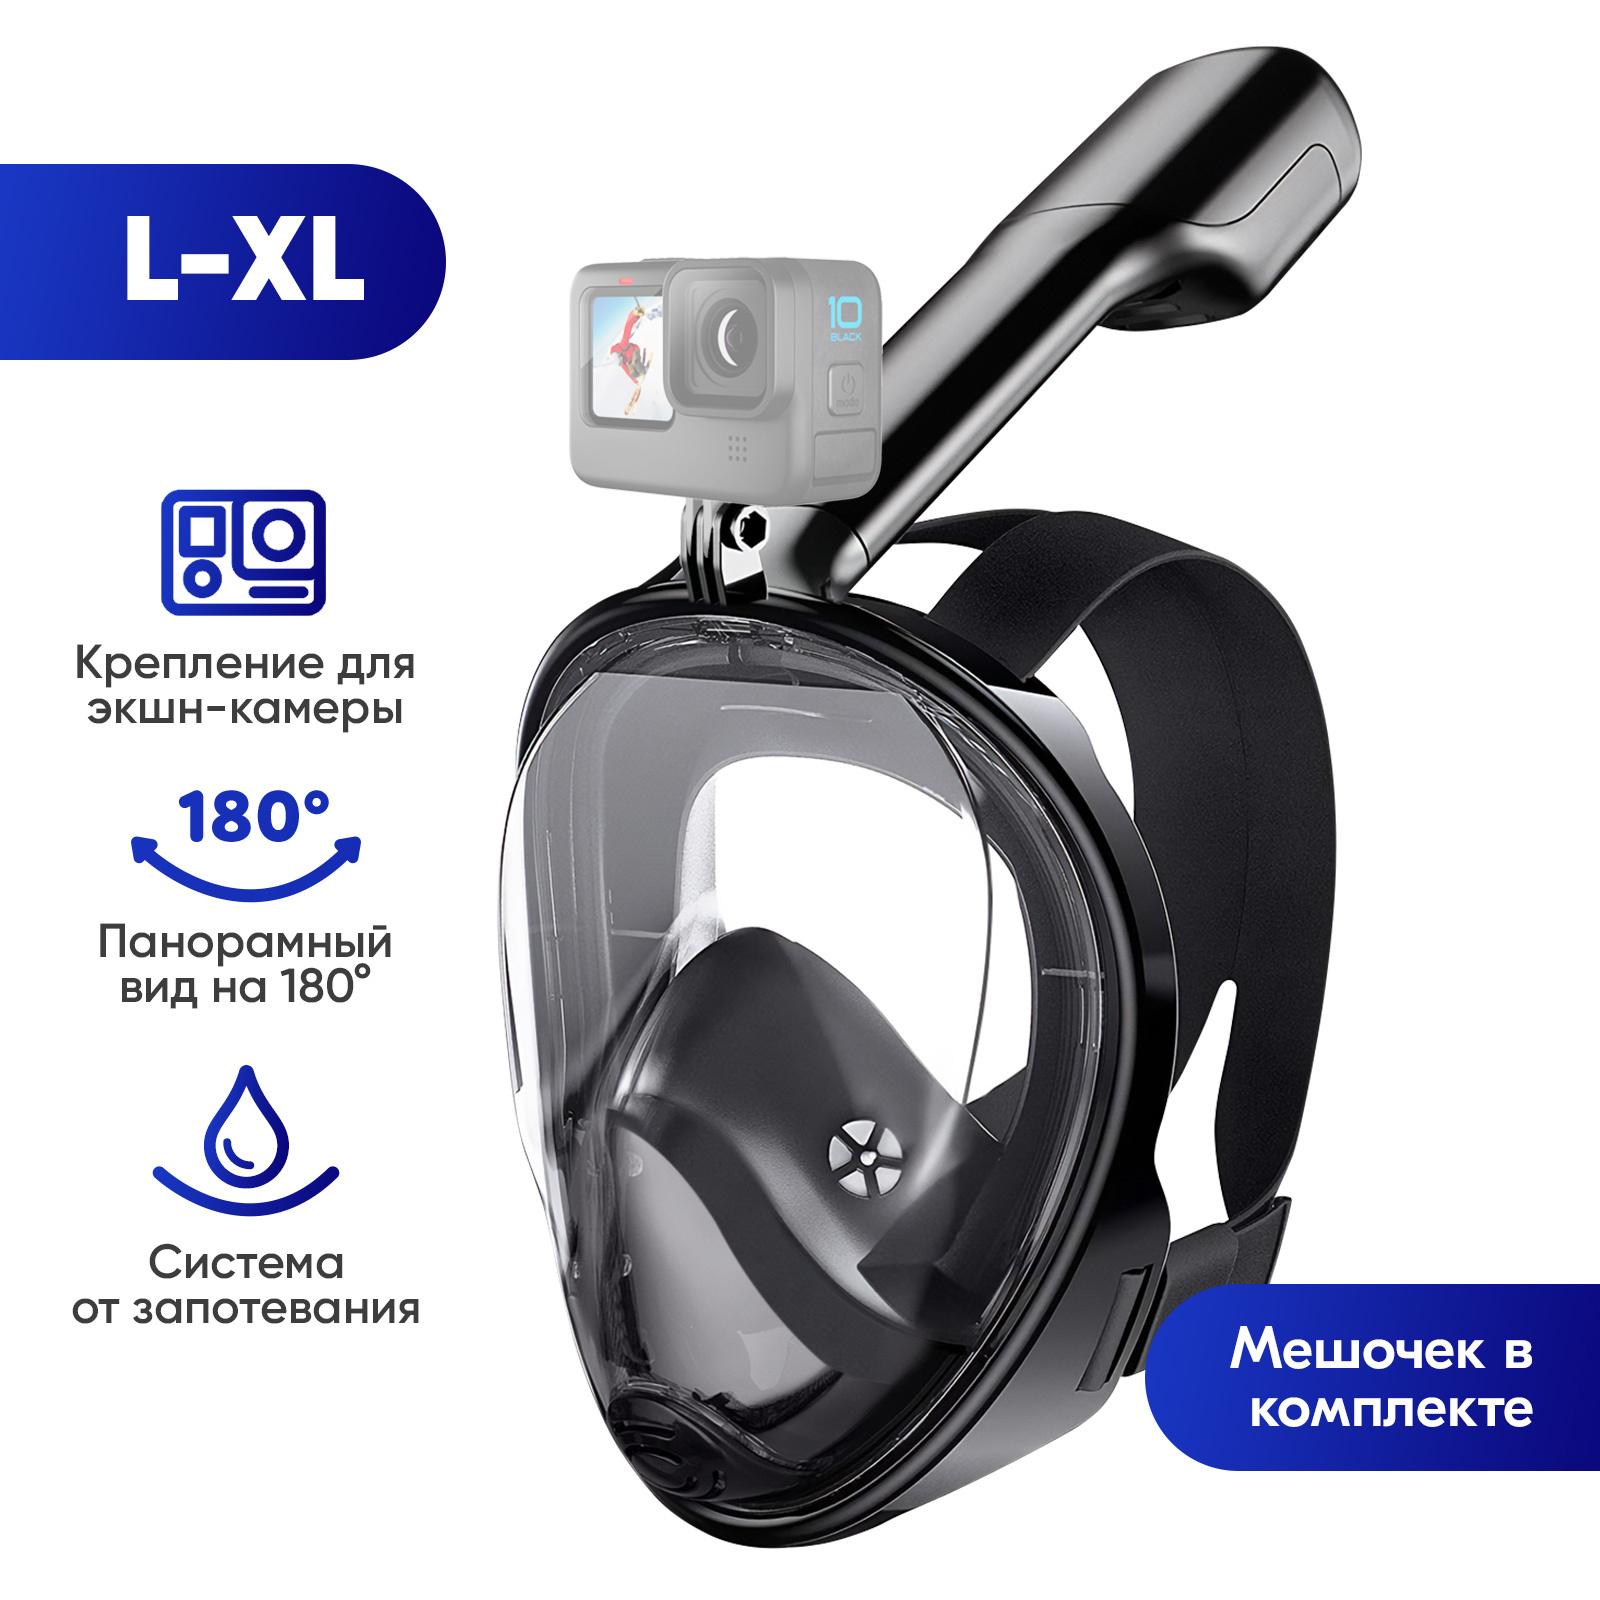 Подводная маска для плавания Aquapolar, полнолицевая маска для снорклинга с креплением для экшн-камеры, размер L-XL, черный